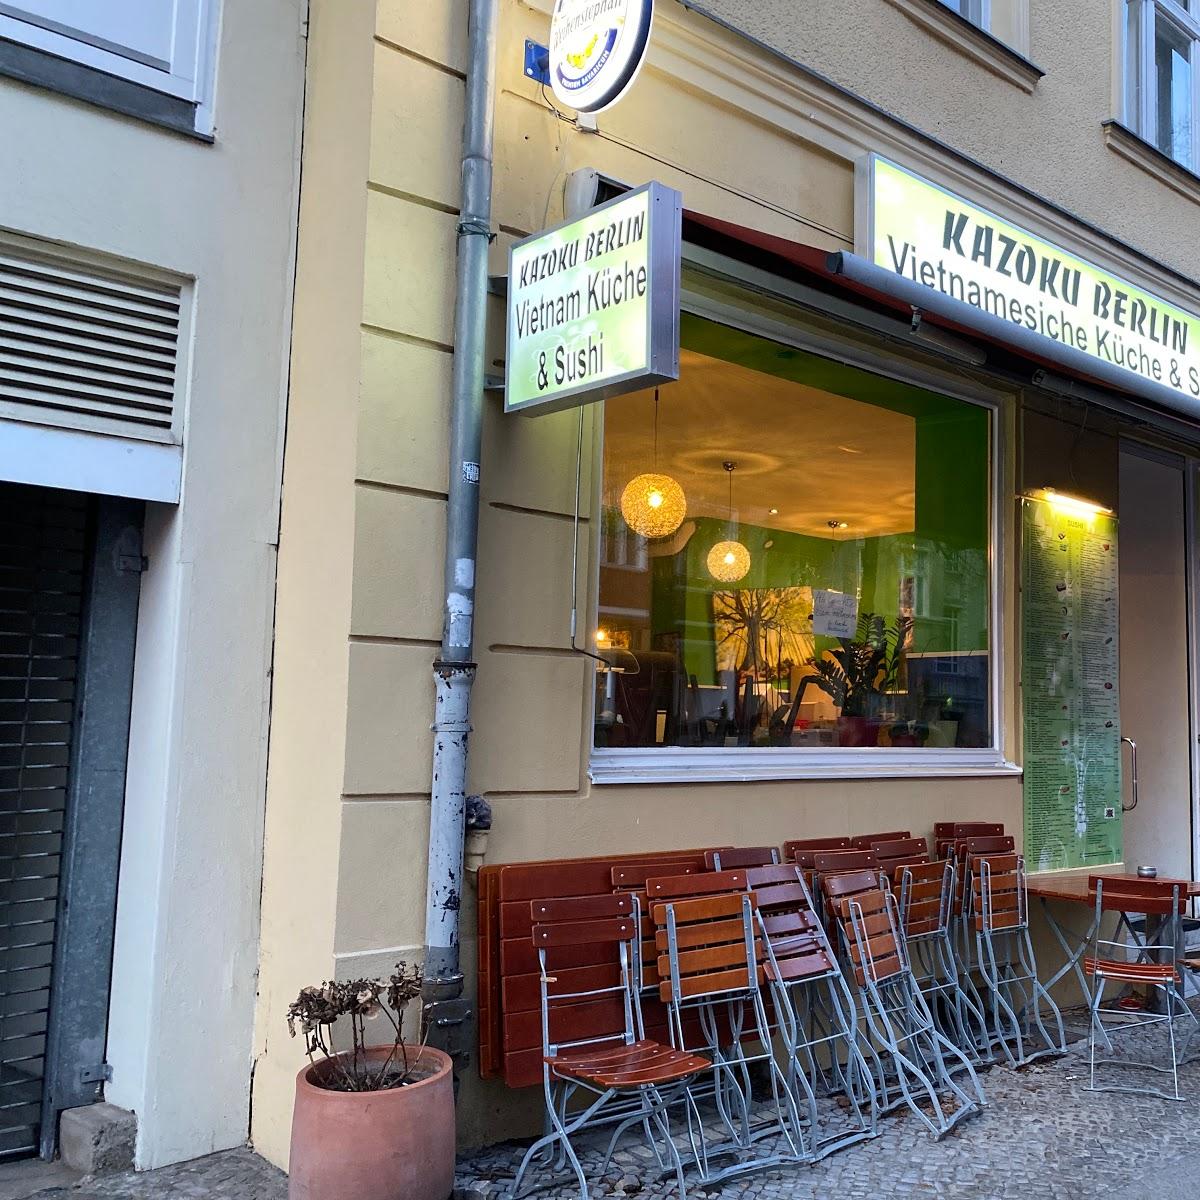 Restaurant "Kazoku Berlin" in Berlin